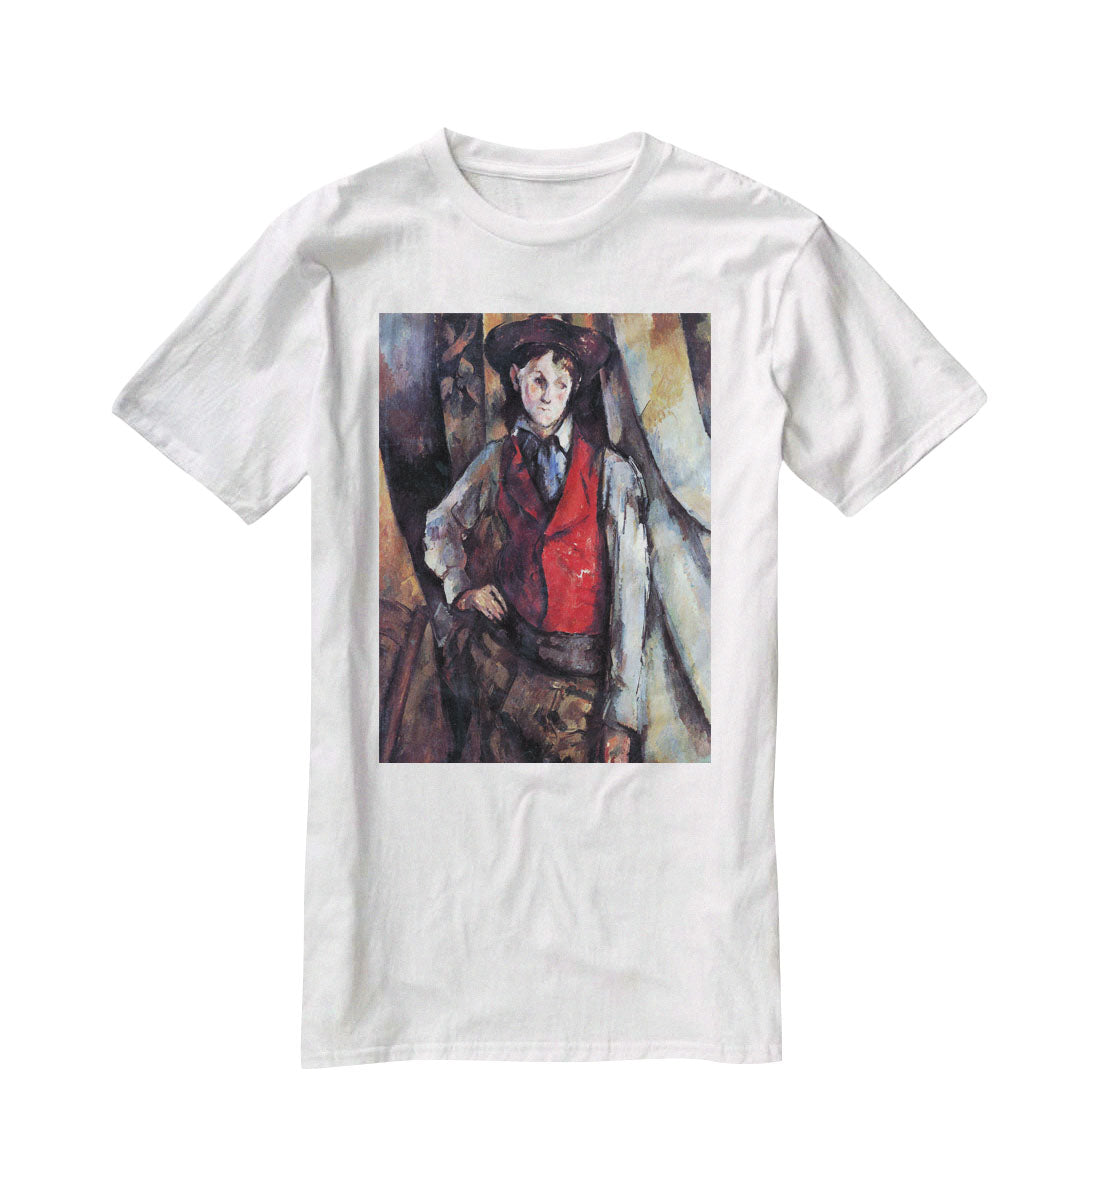 Boy in Red Waistcoat by Cezanne T-Shirt - Canvas Art Rocks - 5